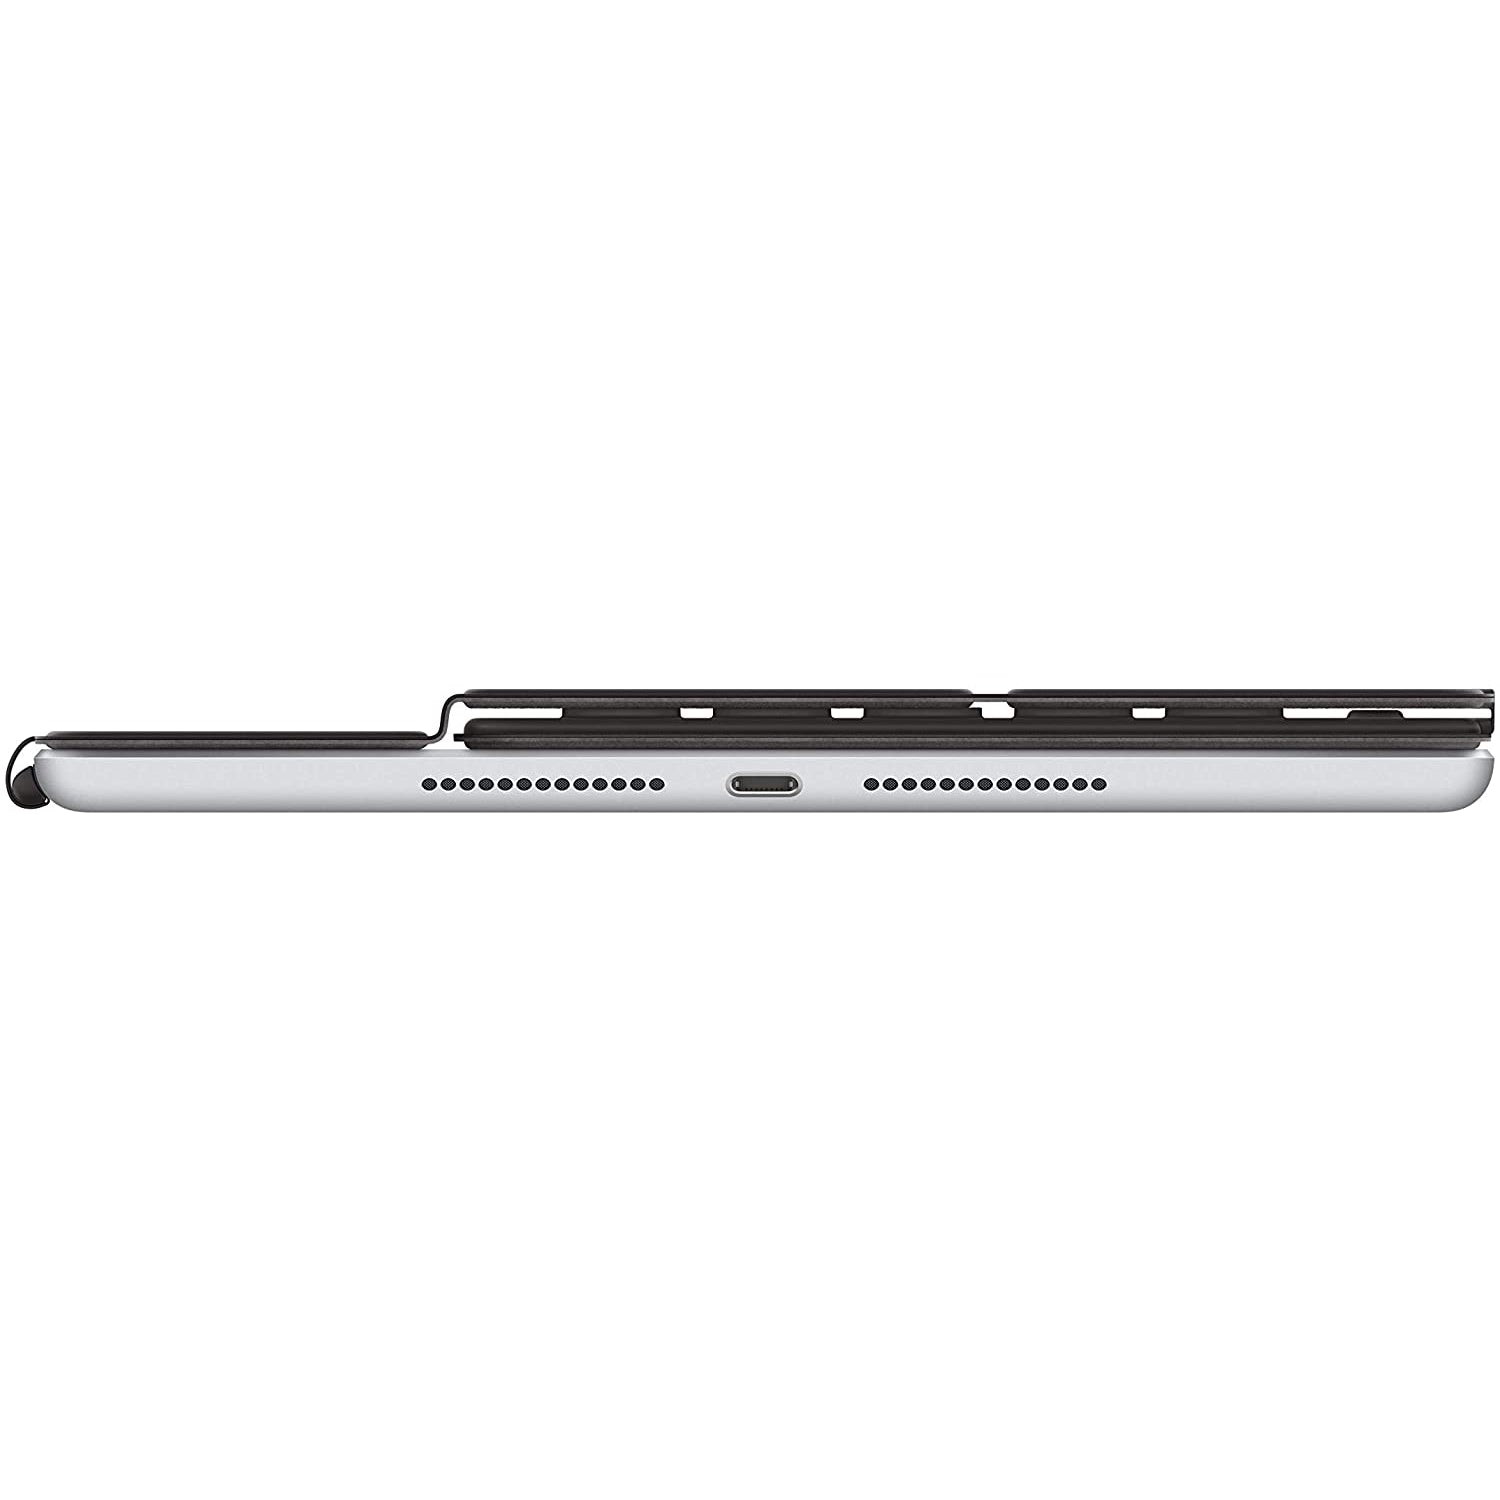 Apple Smart Keyboard MX3L2B/A for 10.5" iPad - Black - Refurbished Pristine